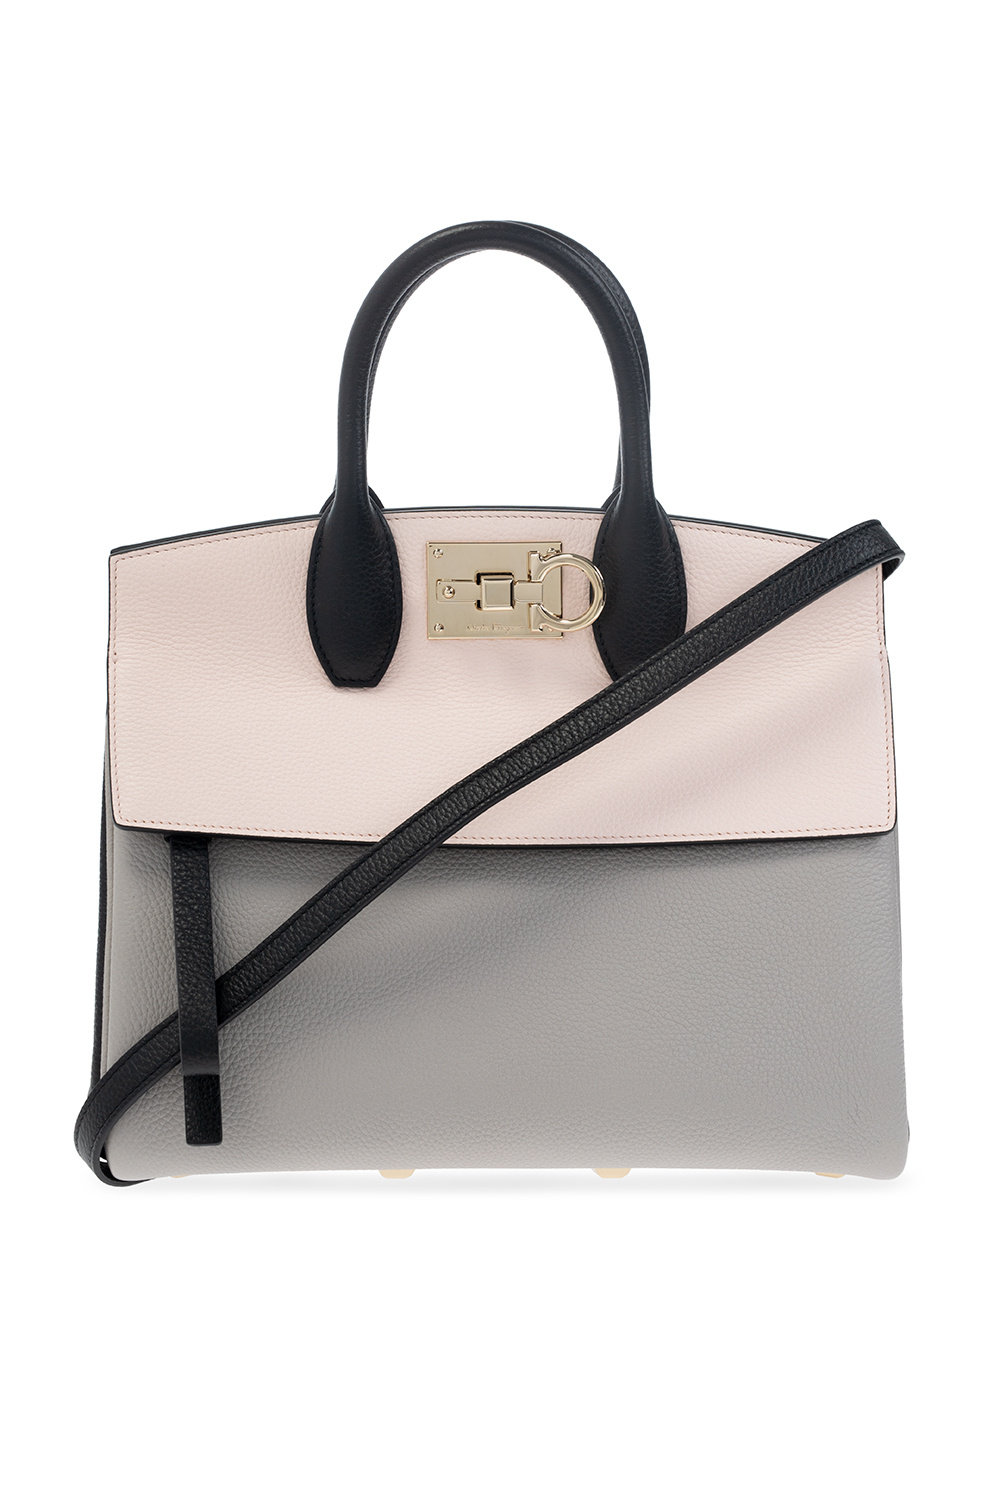 Salvatore Ferragamo ‘Studio Bag Small’  shoulder bag